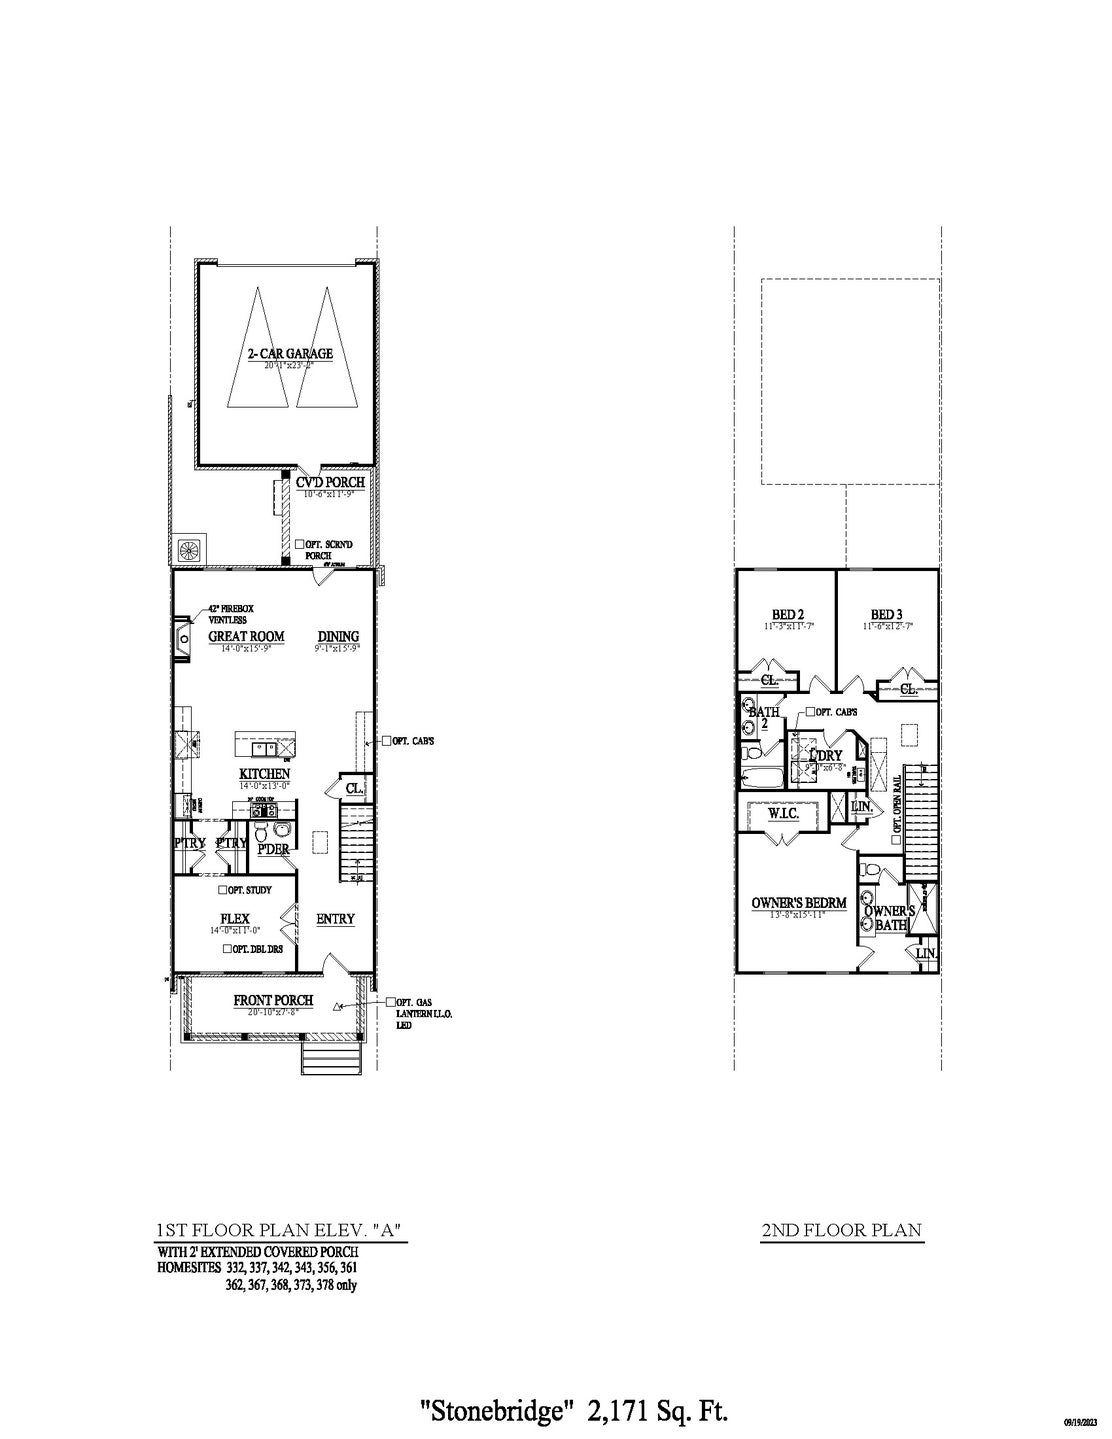 Stonebridge New Home Floorplan